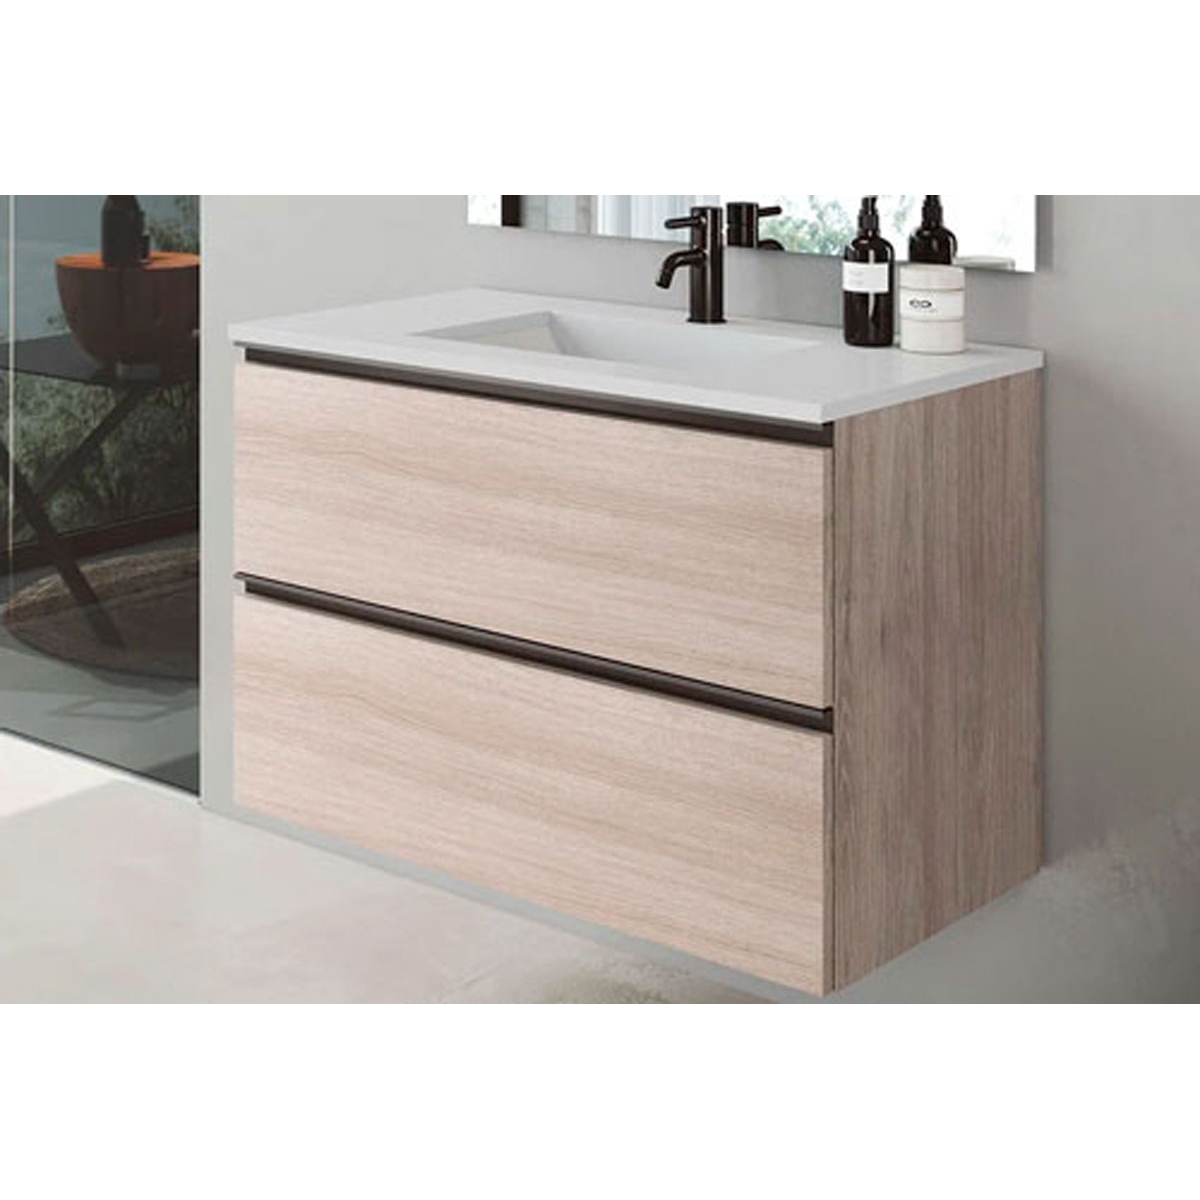 Mueble de baño de suelo de 60 cm con 3 cajones con lavabo integrado acabado crudo Modelo Granadae